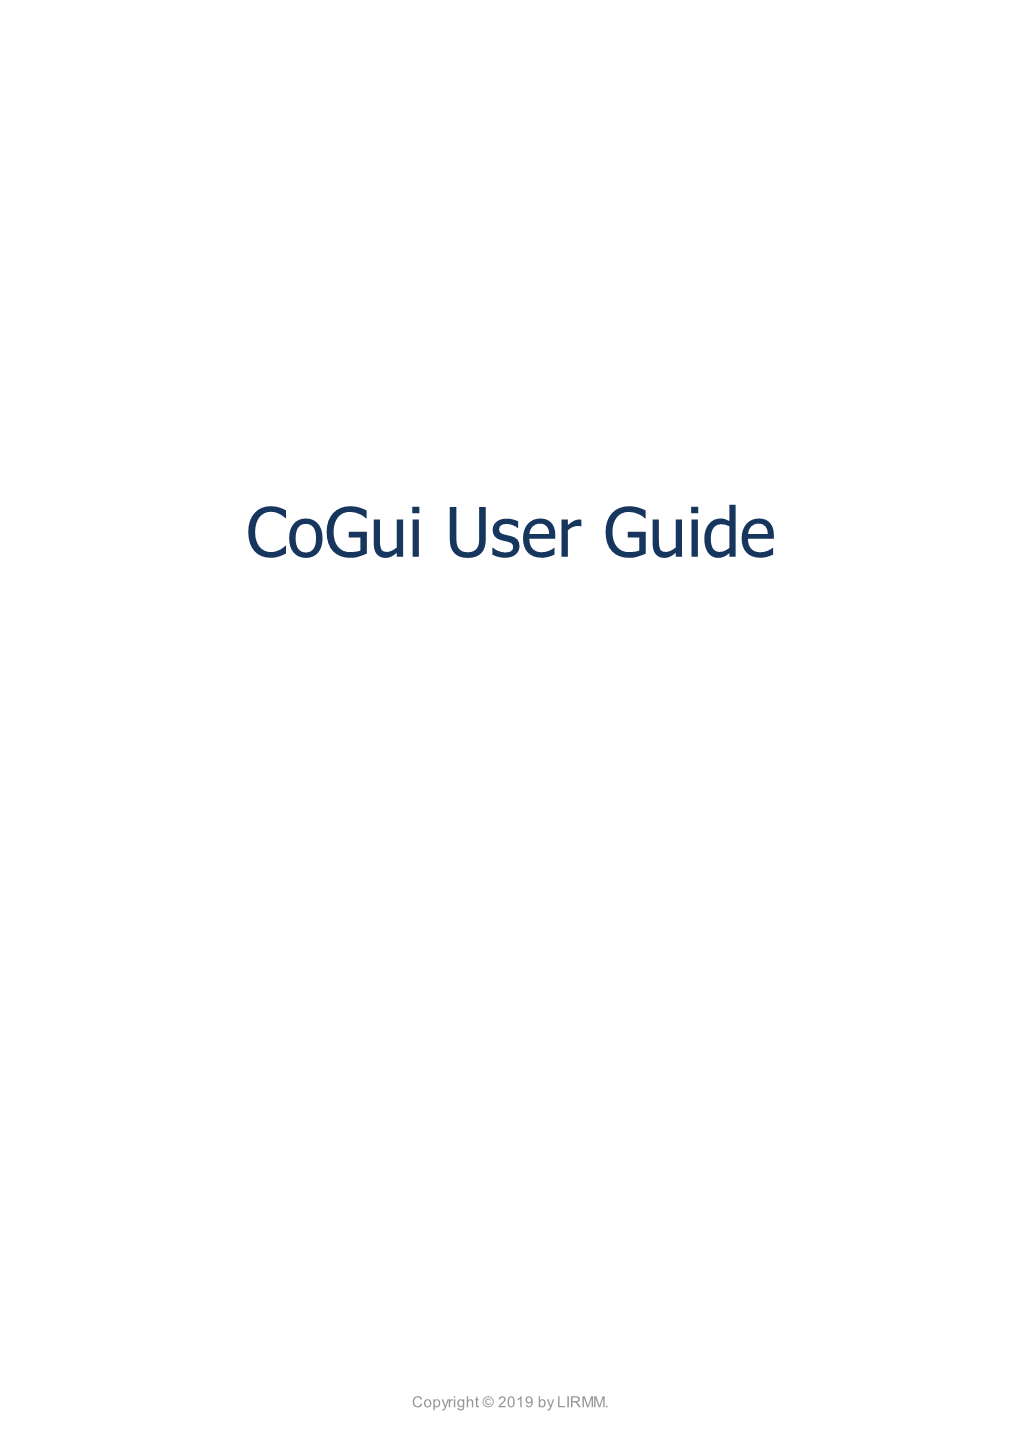 Cogui User Guide